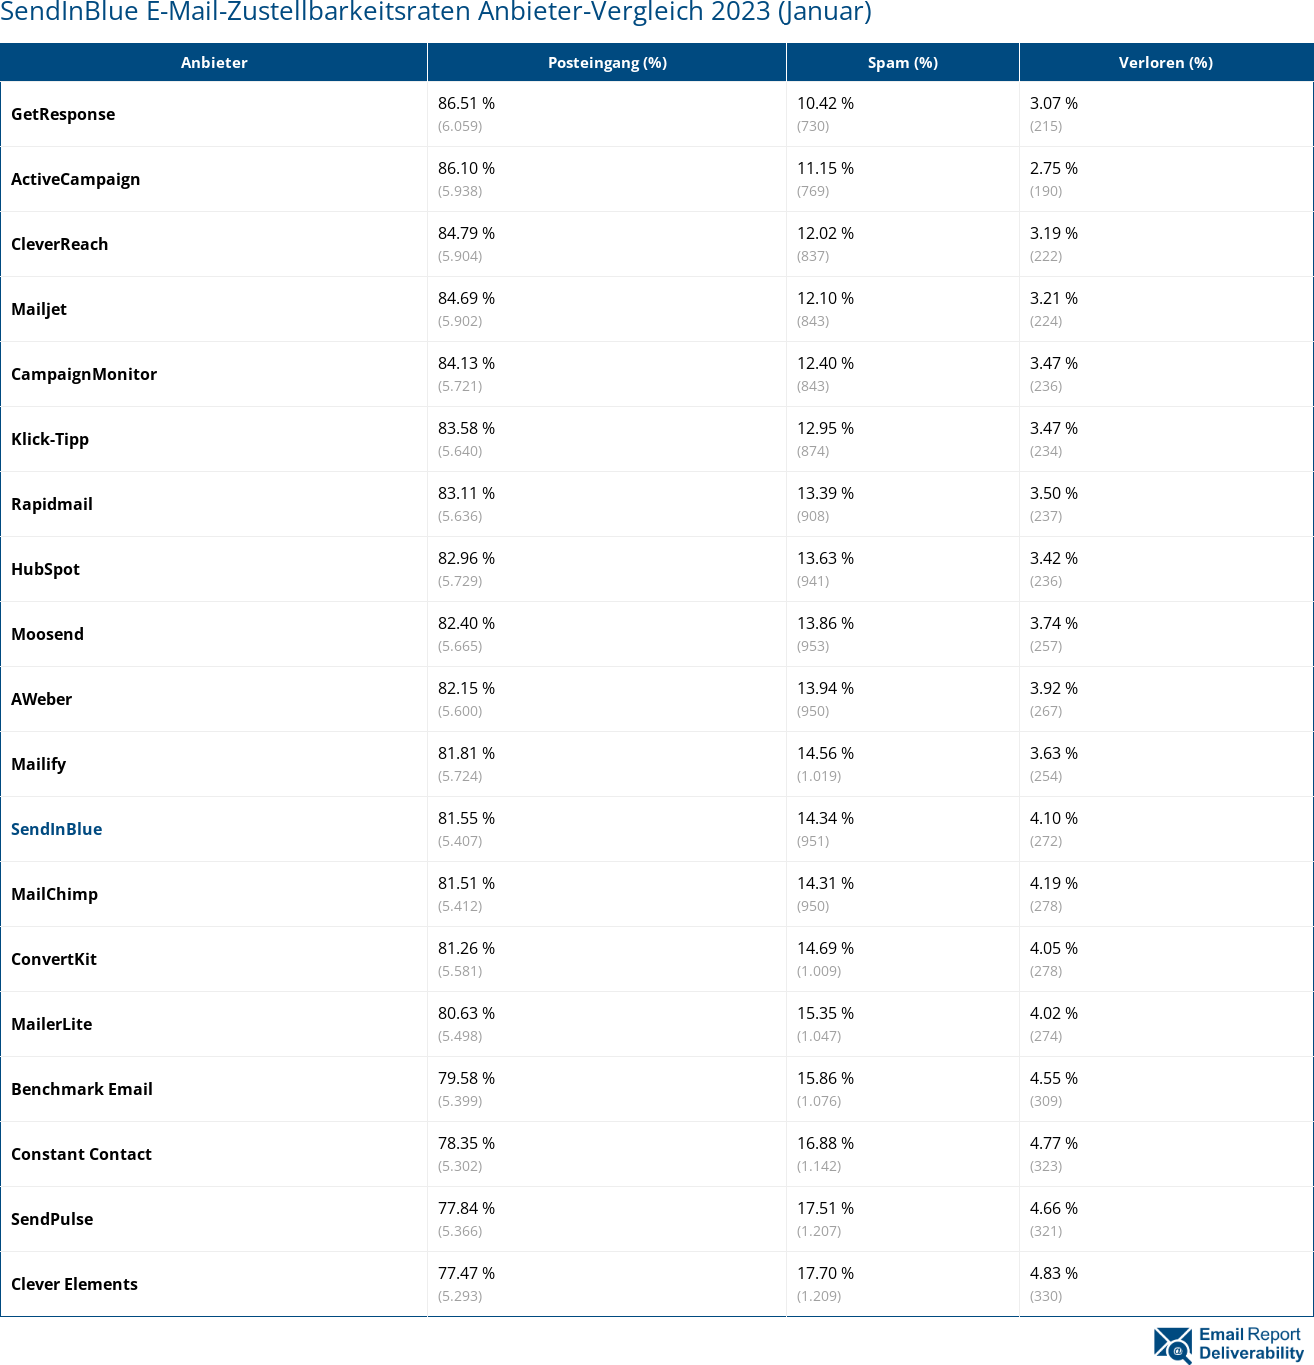 SendInBlue E-Mail-Zustellbarkeitsraten Anbieter-Vergleich 2023 (Januar)